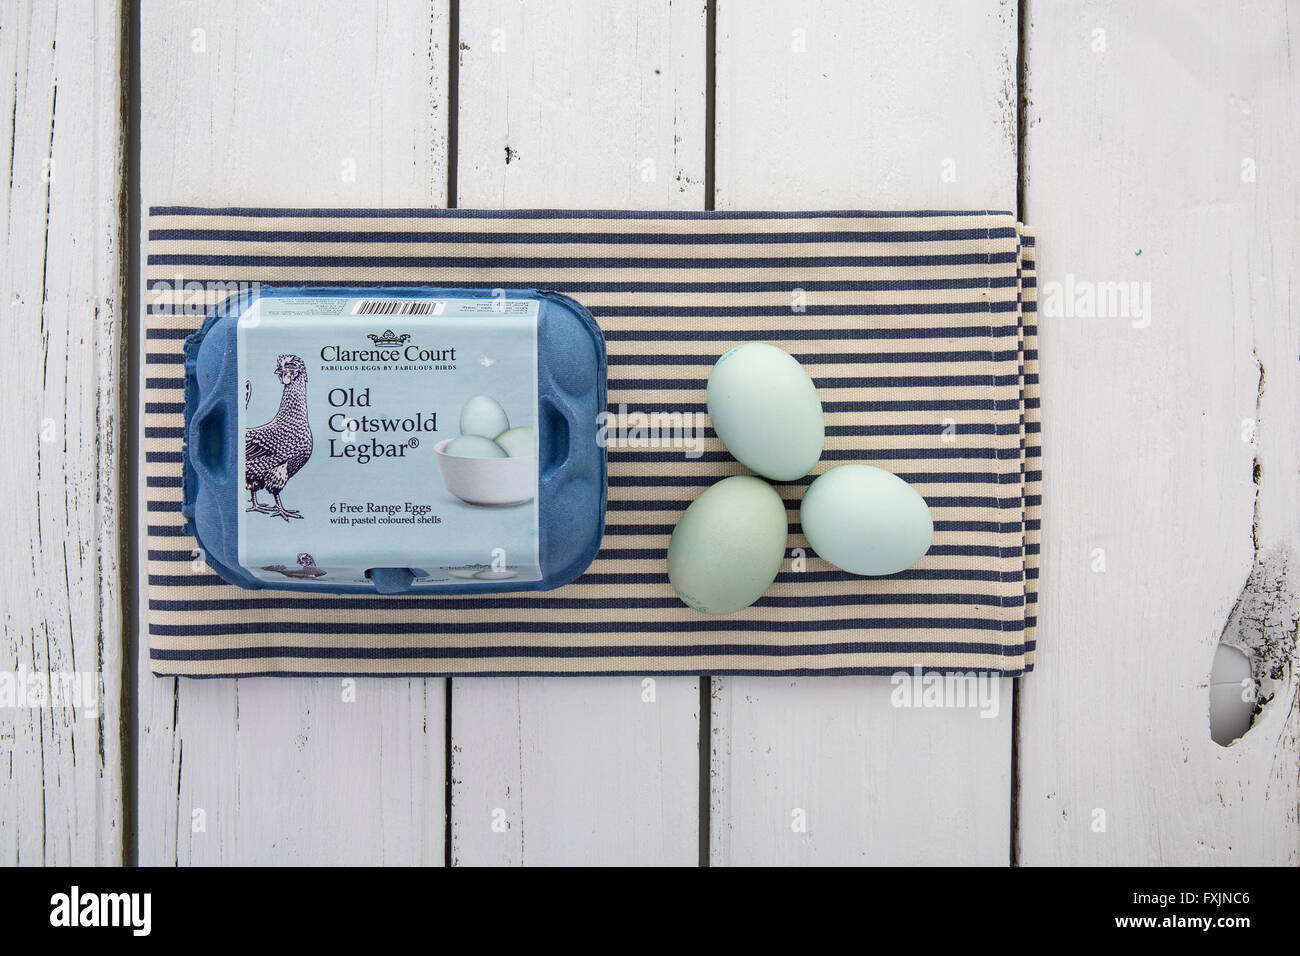 Cotswold vieux Legbar des œufs avec des coquilles de couleur pastel dans une boîte sur une serviette à rayures bleues et blanches sur la table rustique Banque D'Images